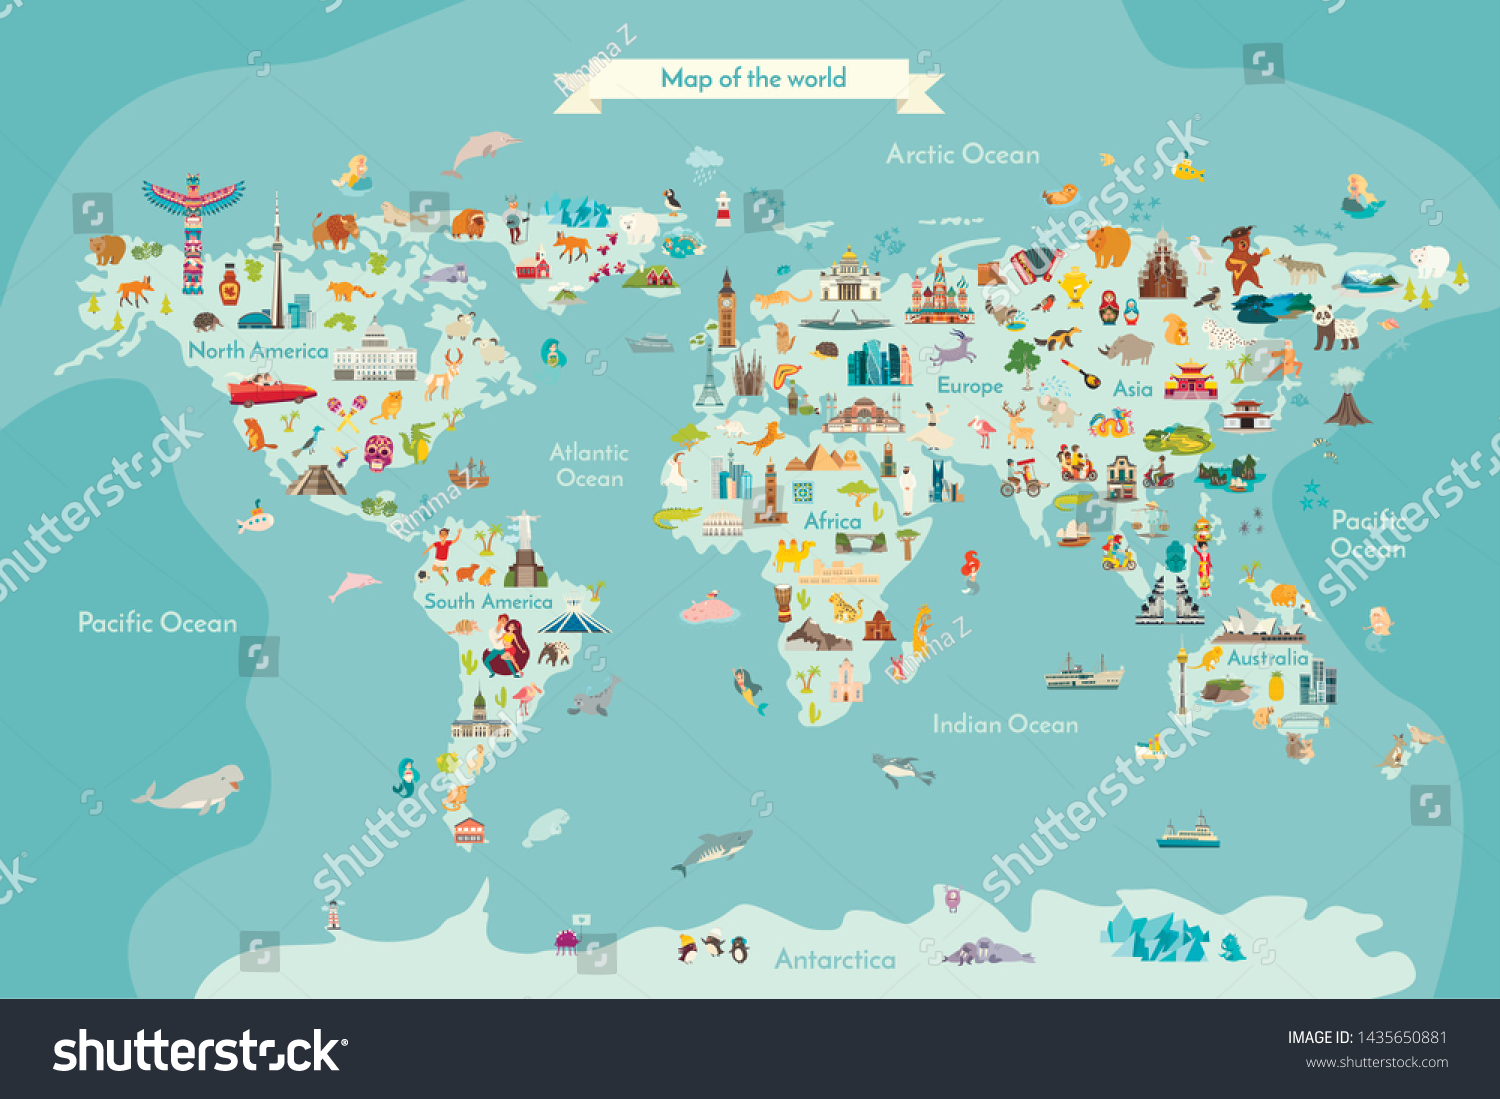 Landmarks world map vector cartoon illustration